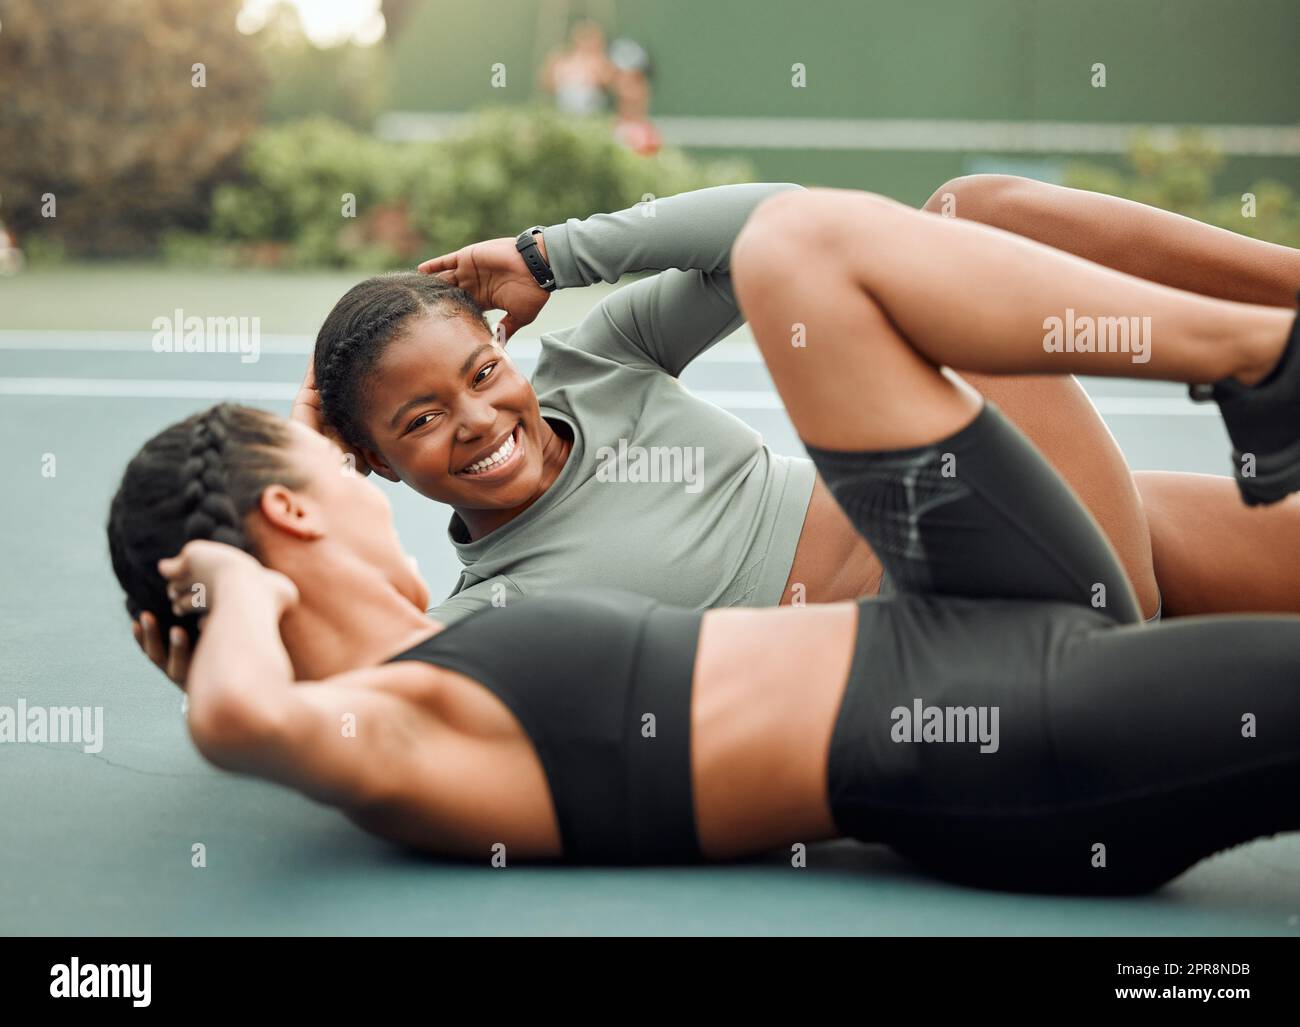 La motivation est à vos côtés. Deux jeunes athlètes féminines attirantes qui élèvent les jambes pendant leur entraînement sur un terrain de sport. Banque D'Images